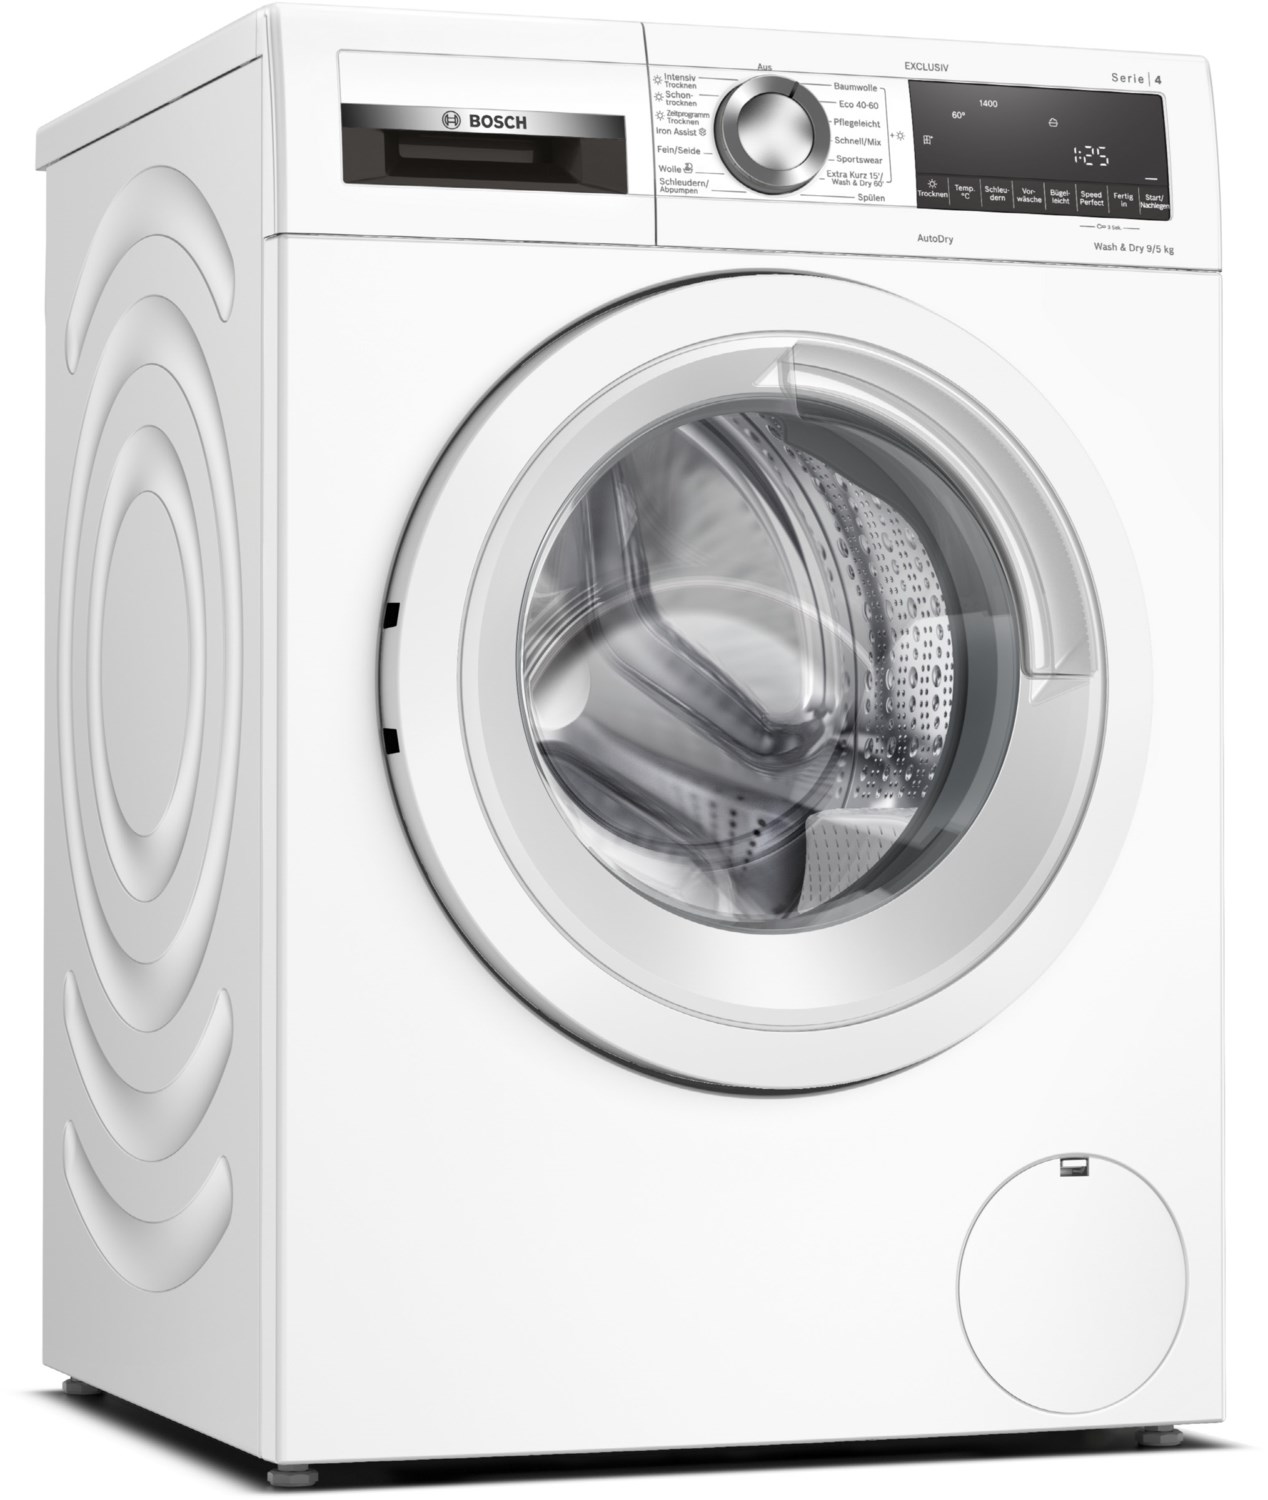 WNA13491 Stand-Waschtrockner weiß